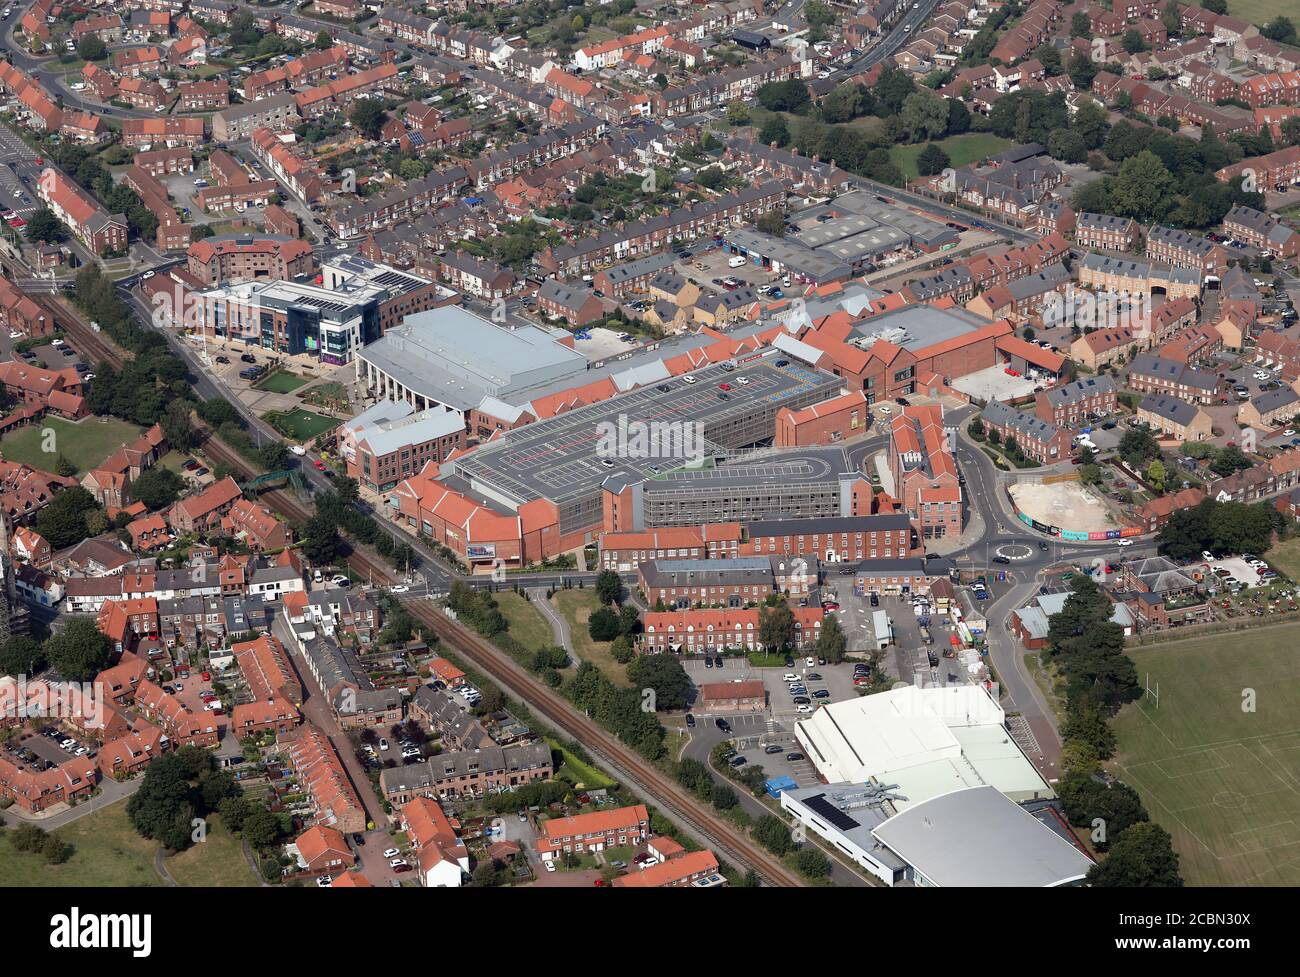 Luftaufnahme von Beverley's Flemingate Shopping Centre und East Riding Leisure Centre, Beverley, East Yorkshire Stockfoto